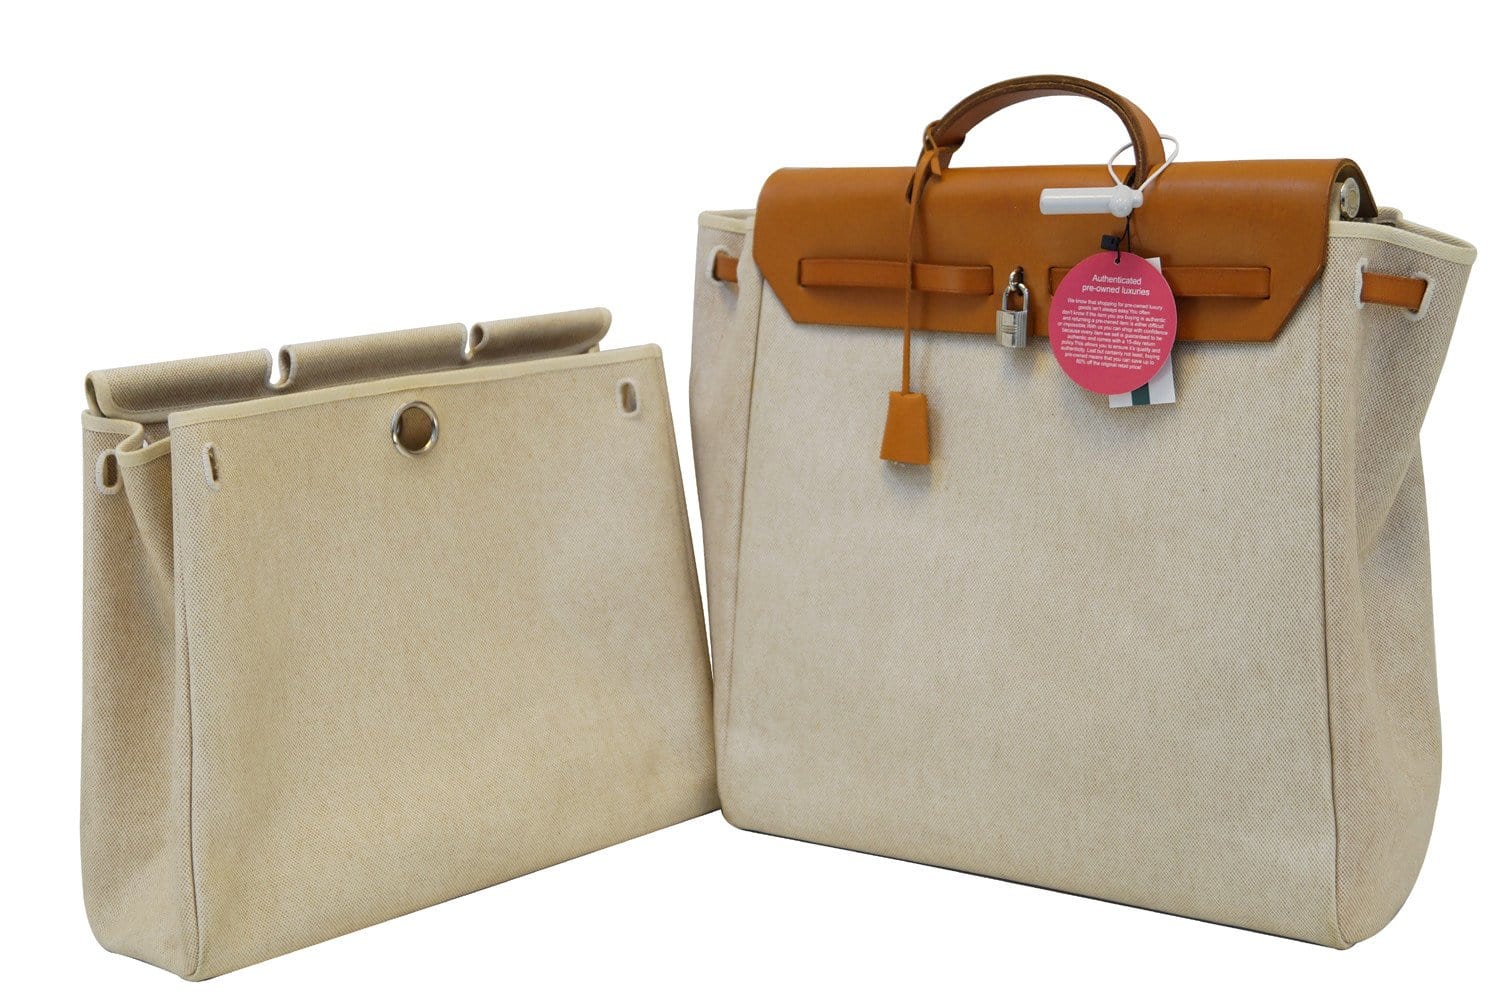 Calvin Klein Authenticated Handbag